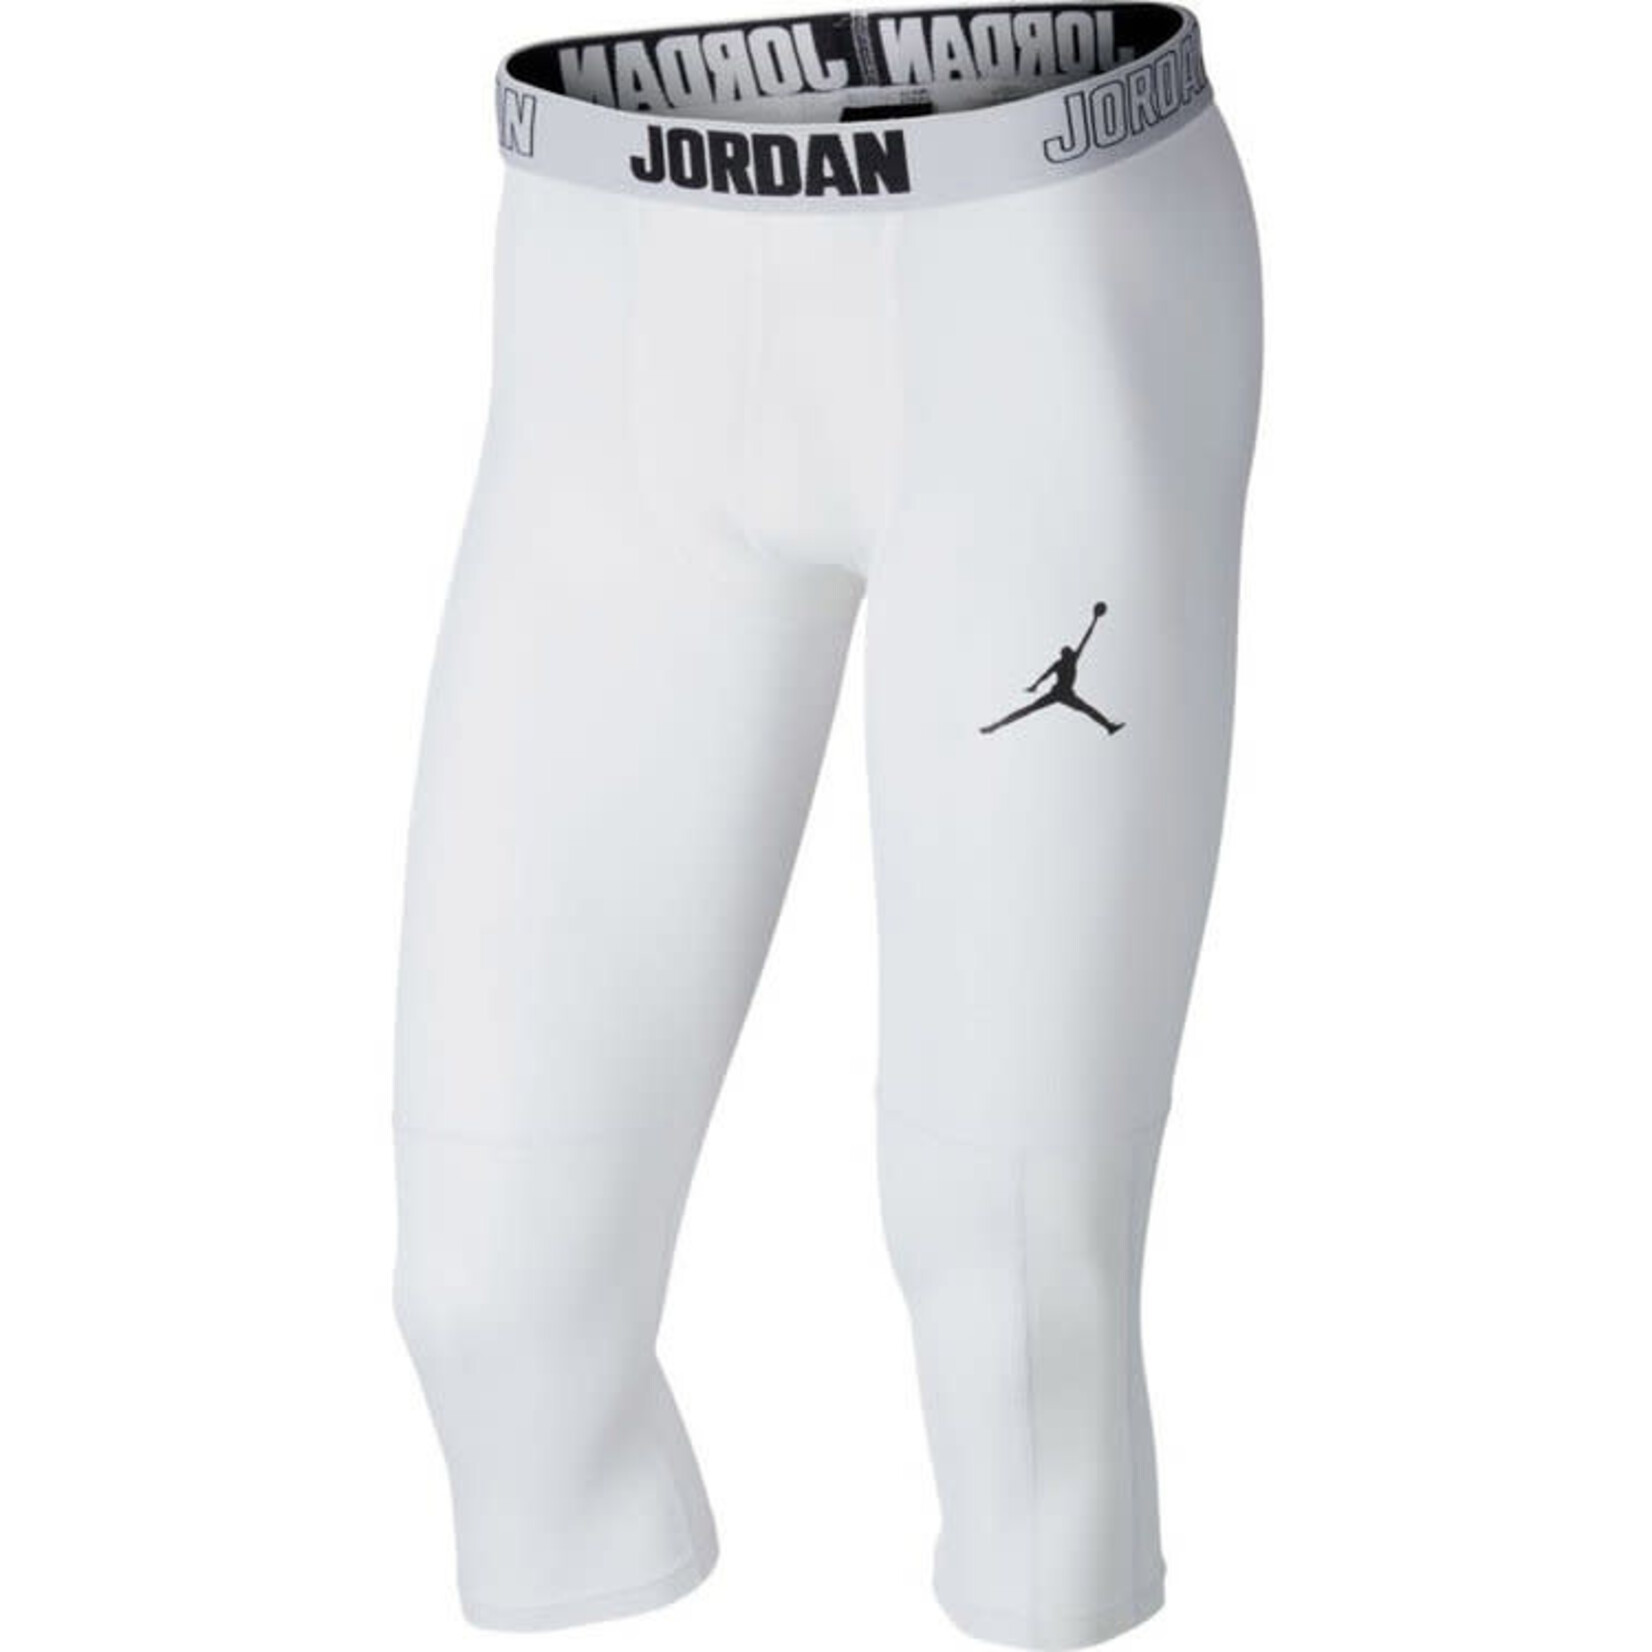 Nike Jordan DRI-FIT Training Leggings White